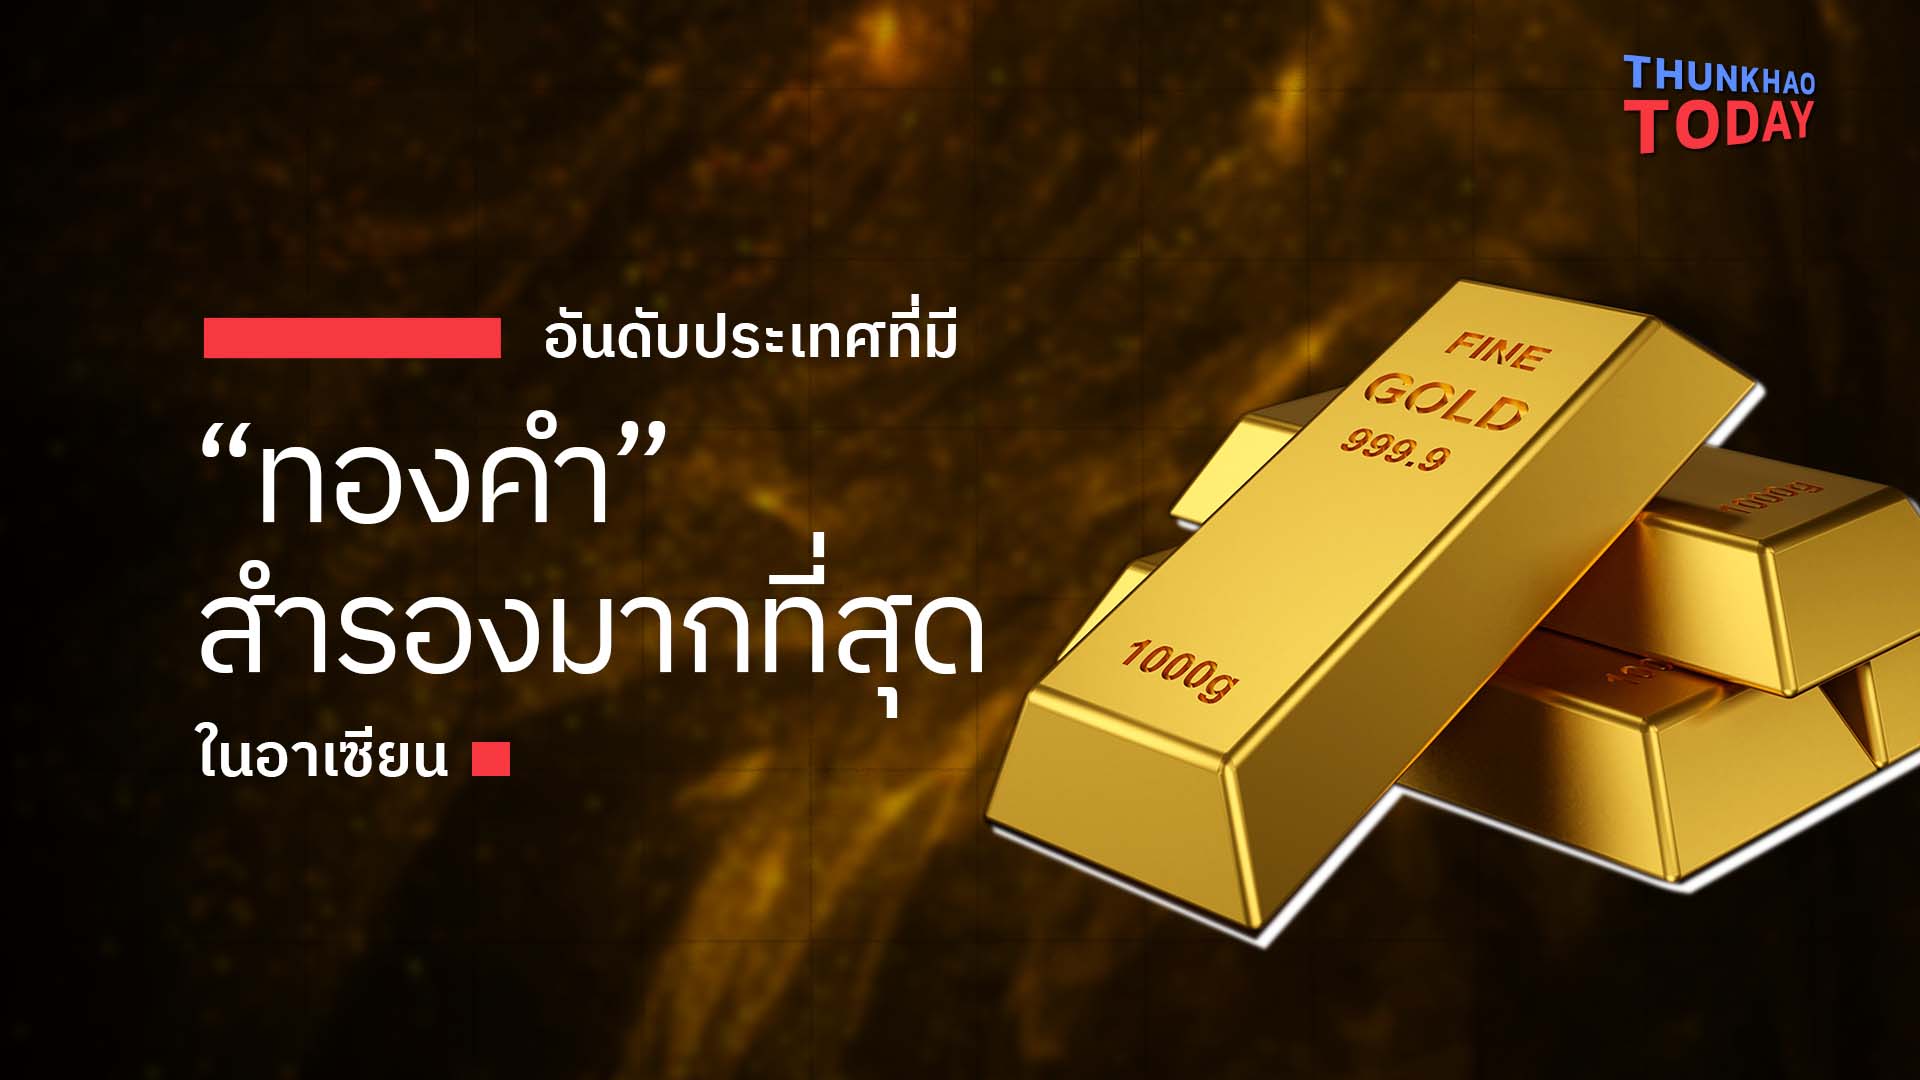 อันดับประเทศที่มี “ทองคำ” สำรองมากที่สุดในอาเซียน